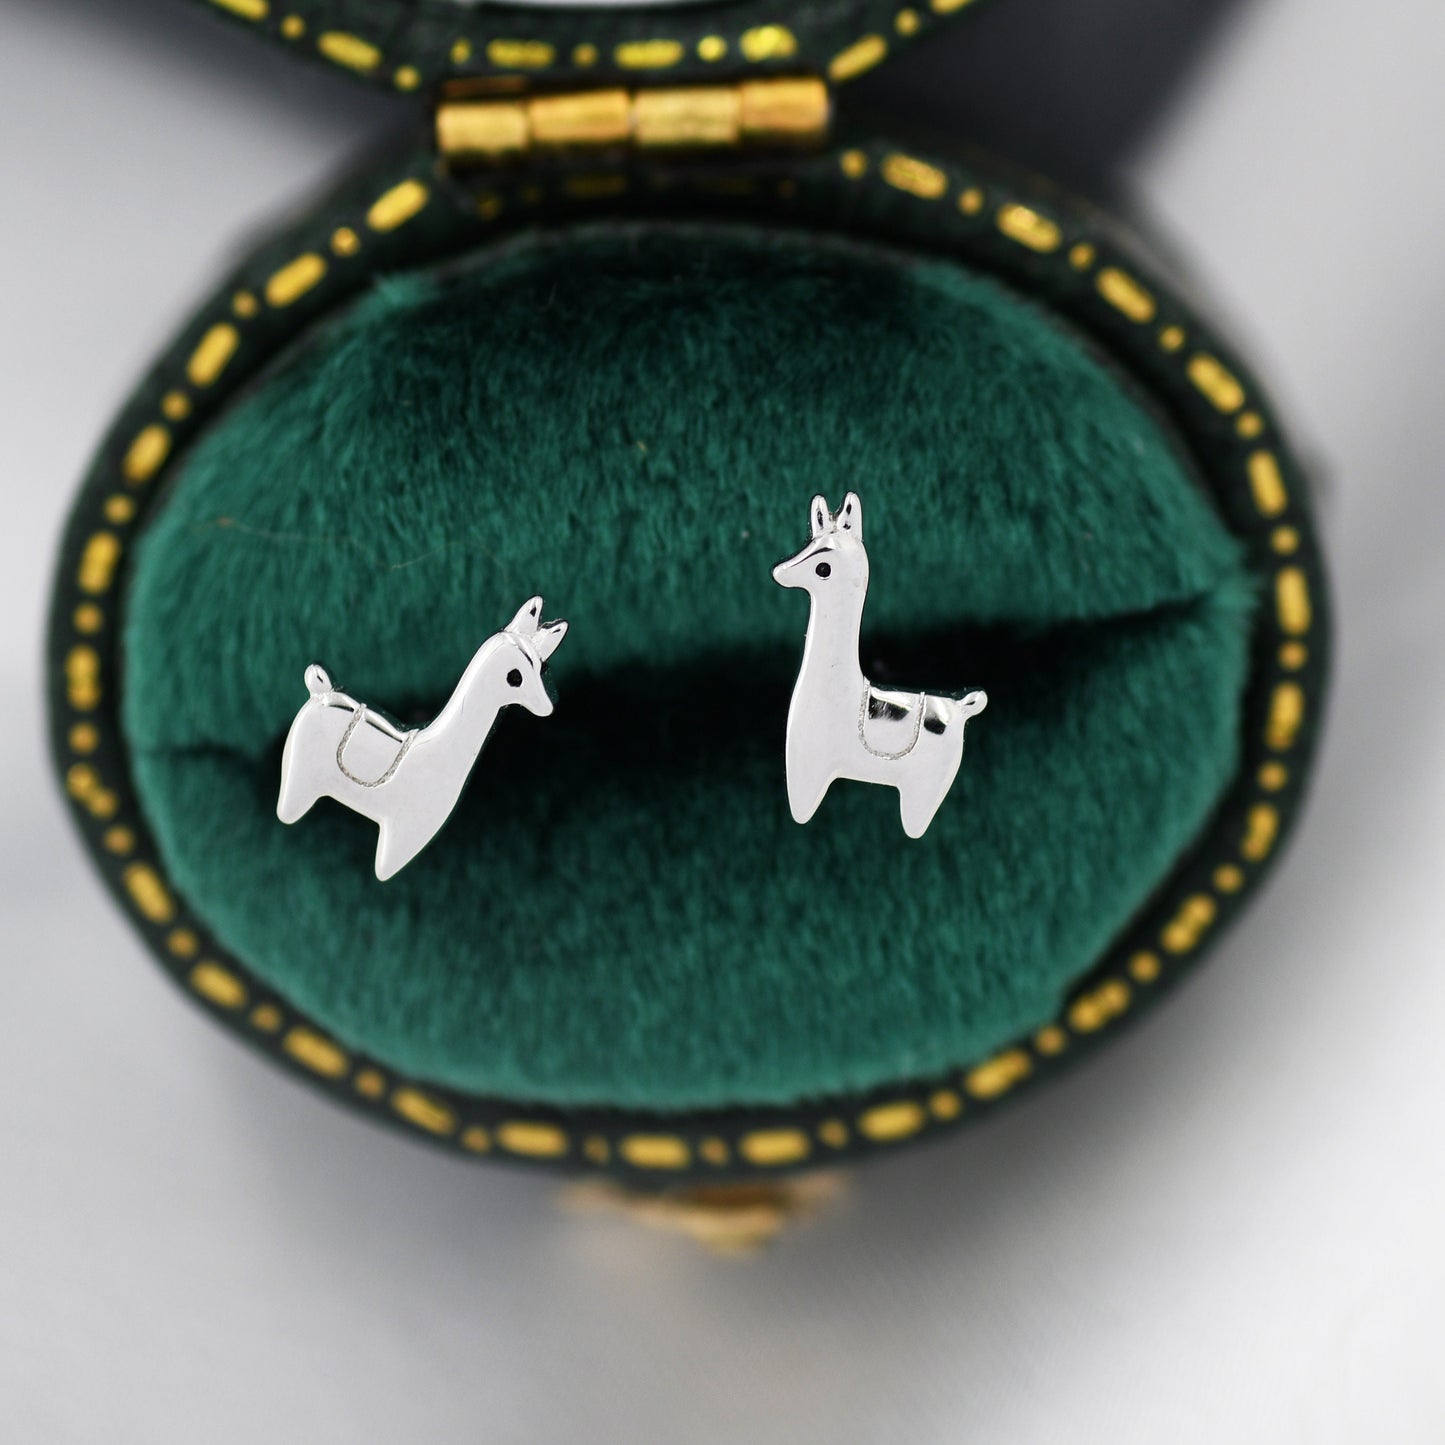 Tiny Llama Stud Earrings in Sterling Silver, Alpaca Sheep Earrings, Nature Inspired Animal Earrings